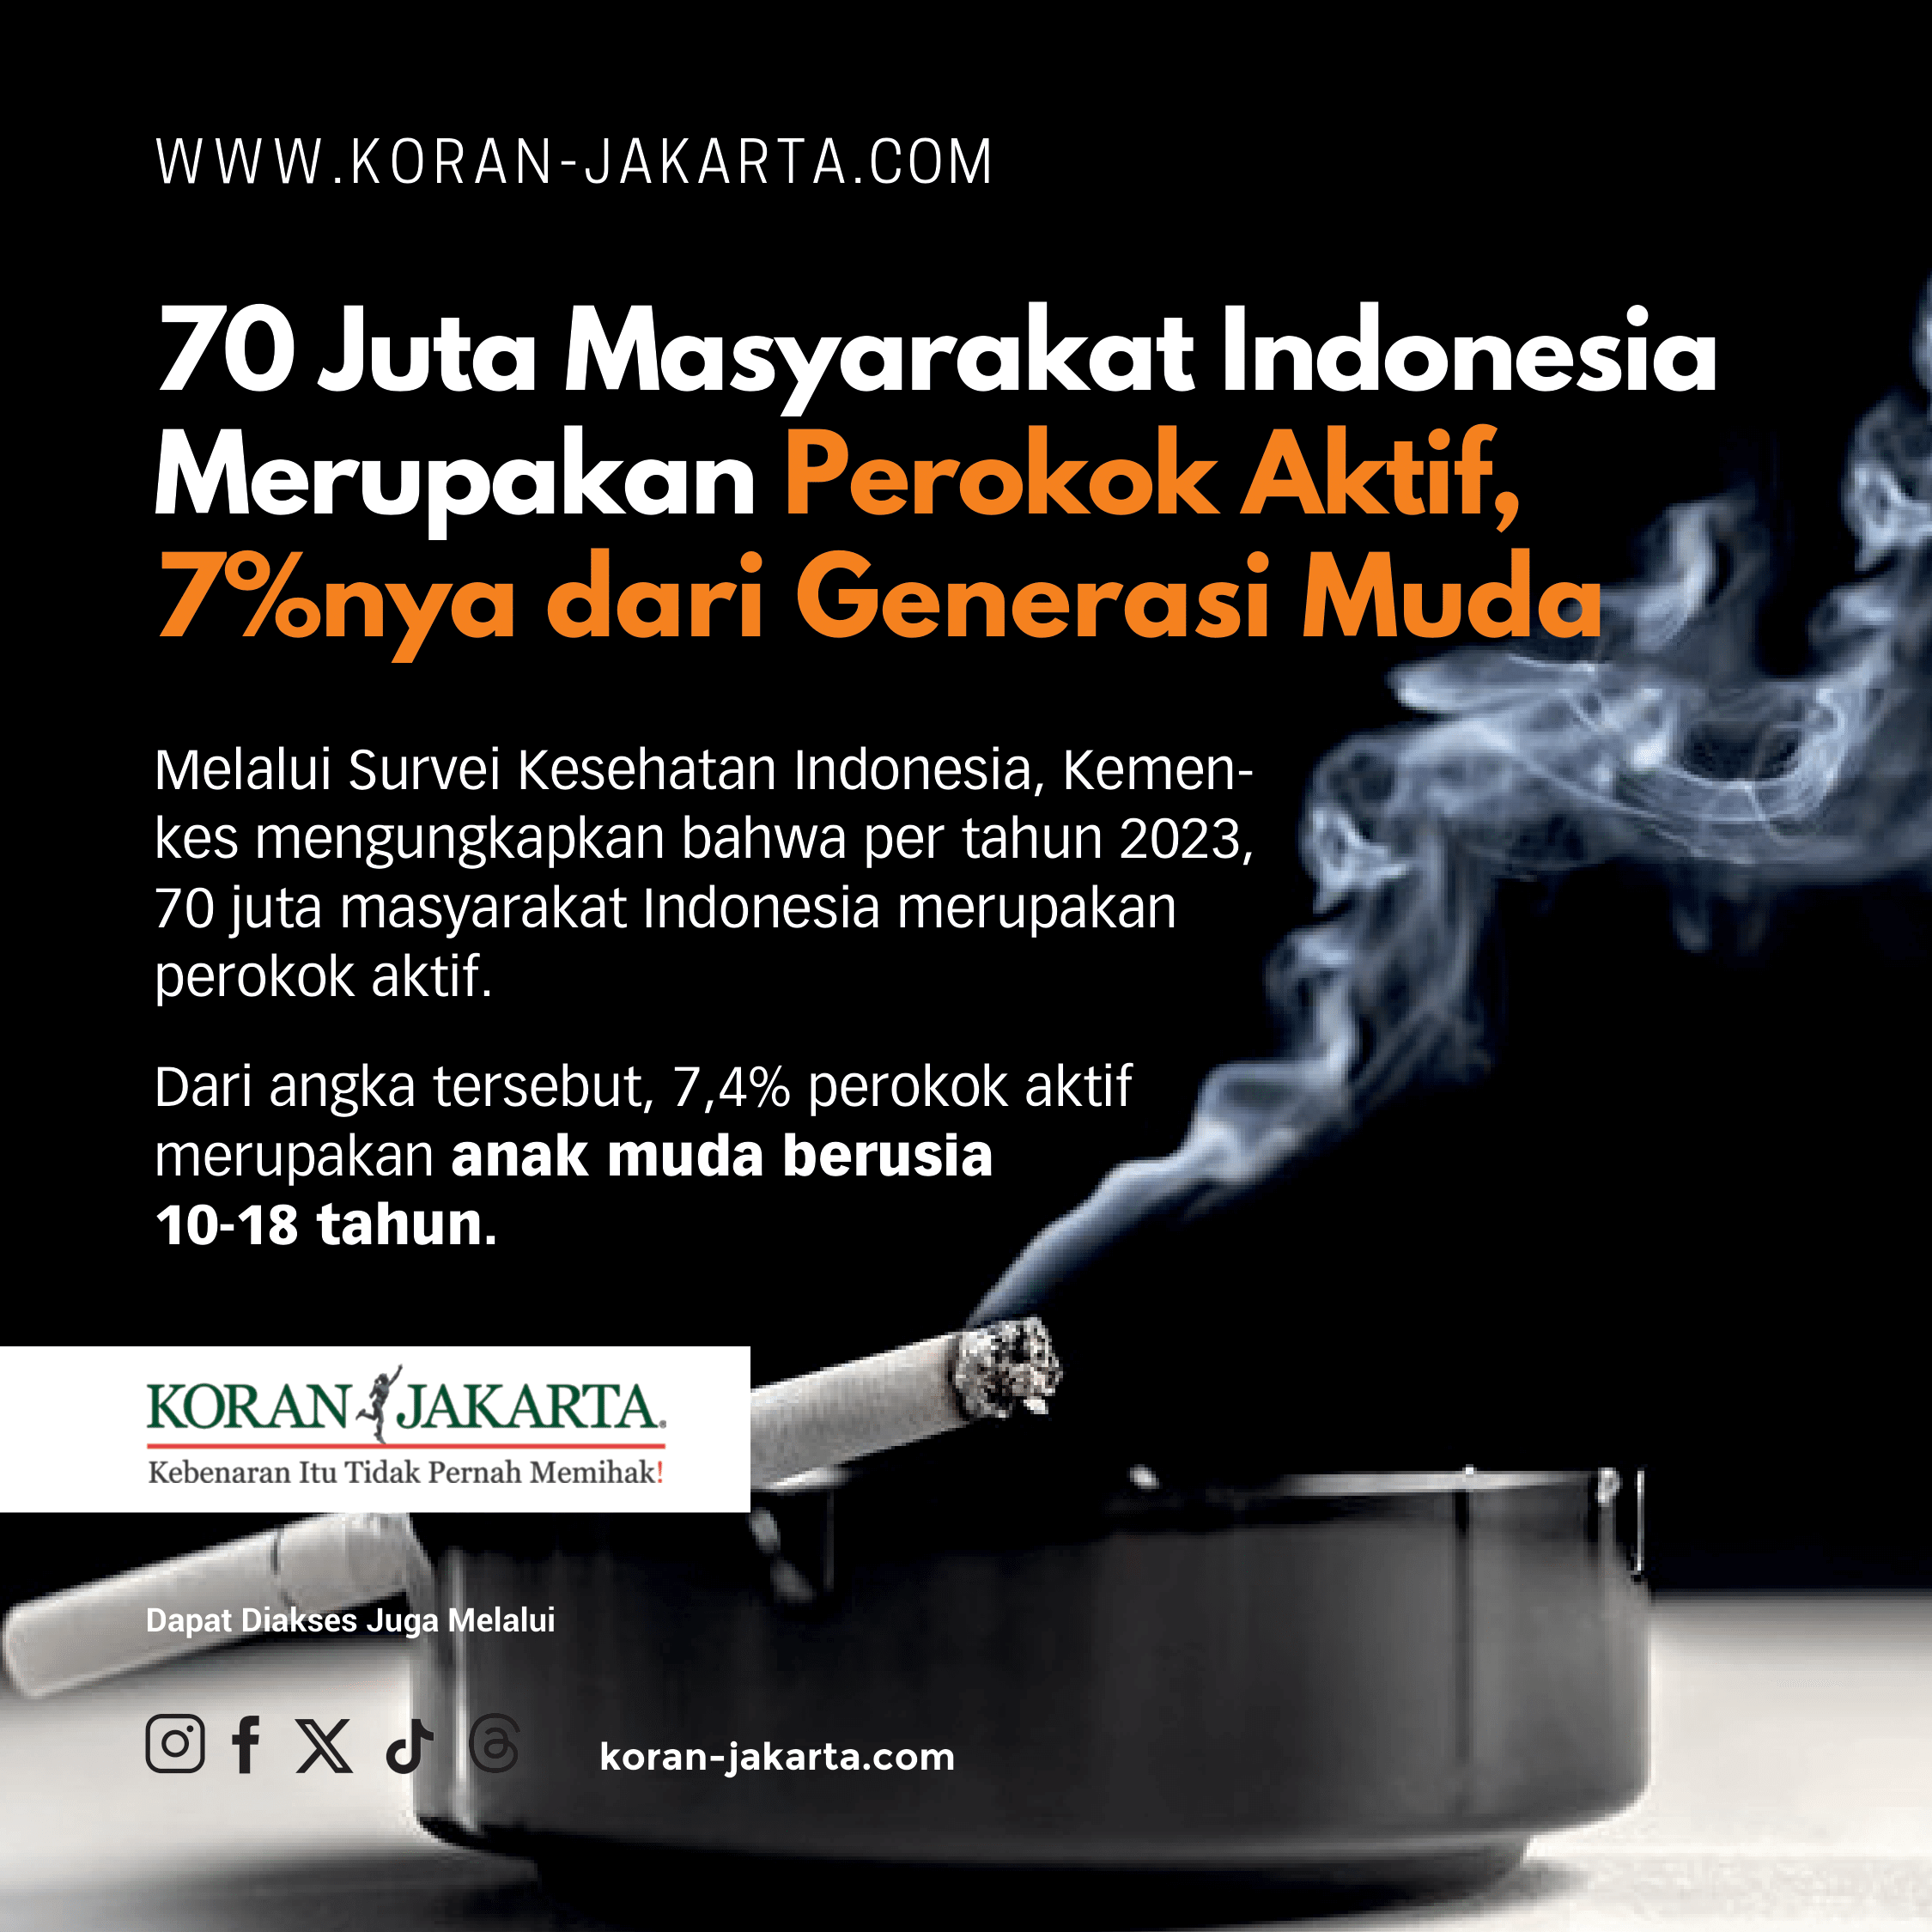 70 Juta Masyarakat Indonesia Merupakan Perokok Aktif, 7%nya Adalah Anak Muda! 1